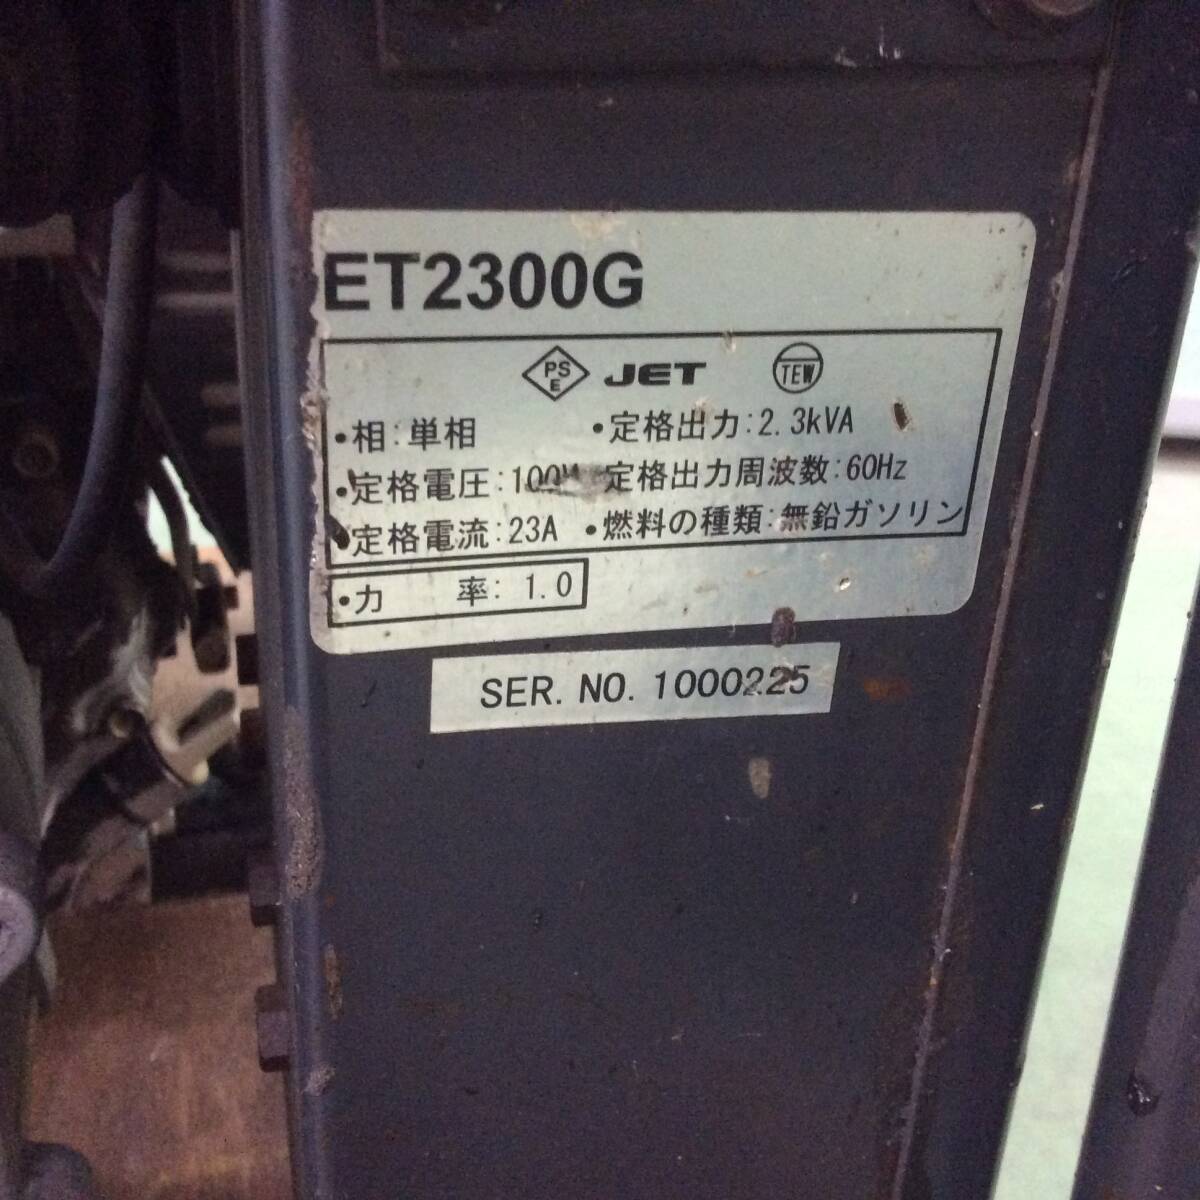 [H-2266] б/у товар ELITE GENERETOR ET2300G 23A 2.3kVA 60Hz 100V Robin двигатель [ самовывоз ограничение * префектура Shizuoka город Hamamatsu ]